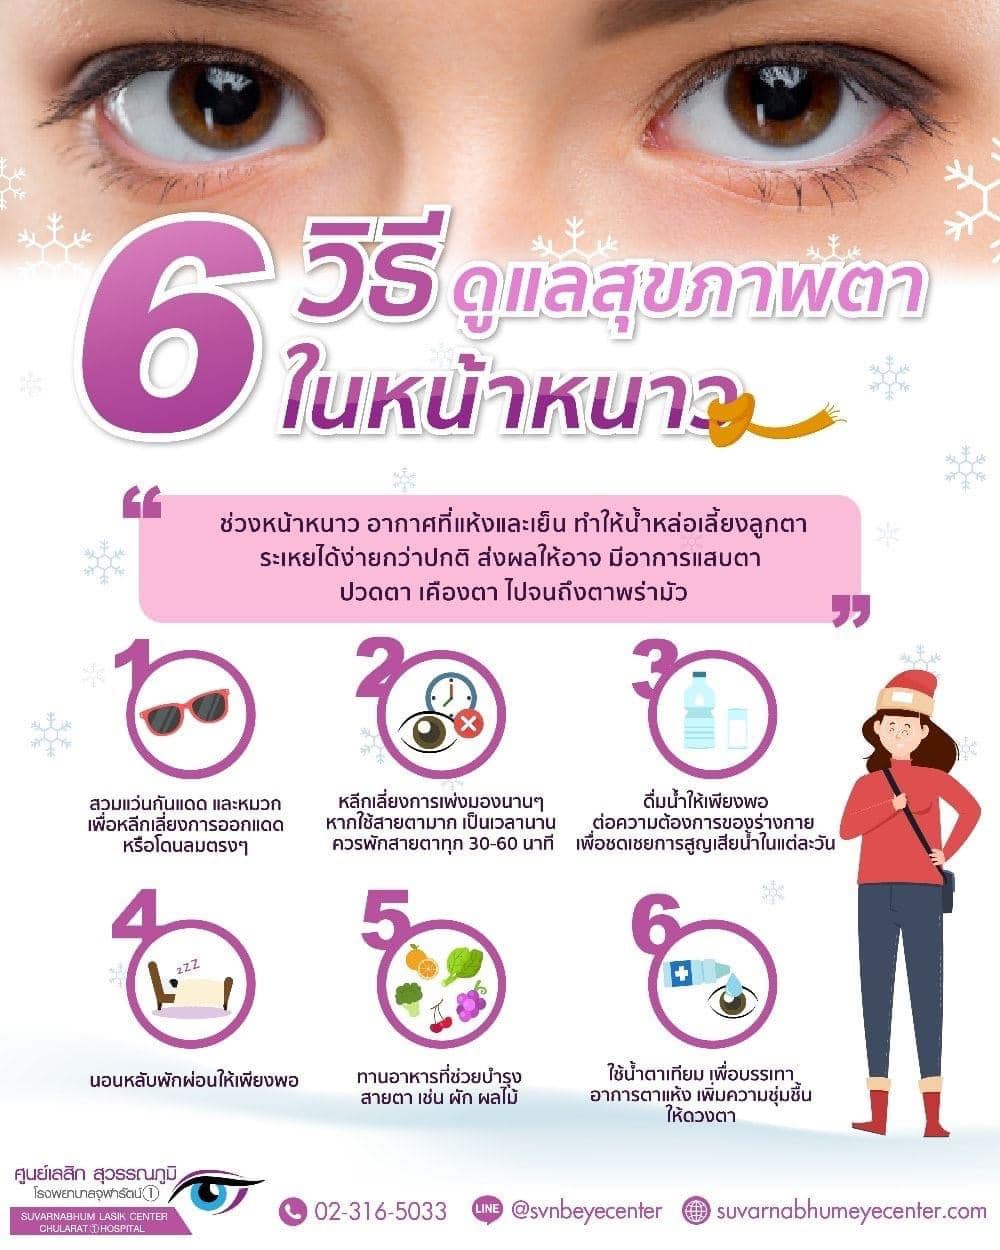 ขอแนะนำ 6 วิธีดูแลสุขภาพตาเมื่ออยู่ในสภาพอากาศที่หนาว